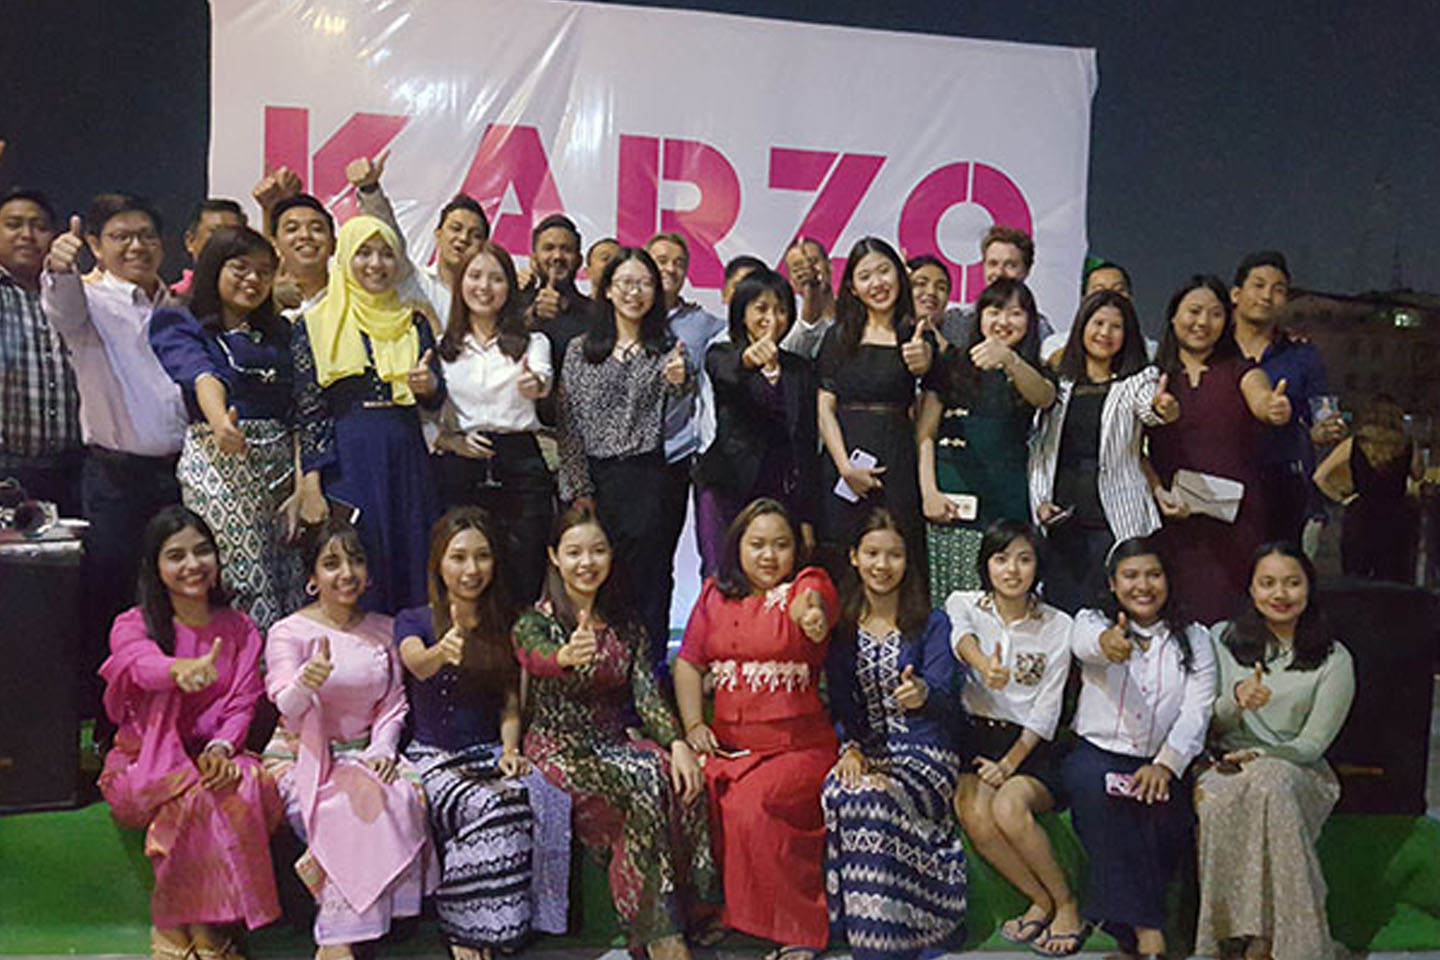 မြန်မာနိုင်ငံရဲ့ ပထမဆုံး ကုန်စည်ပို့ဆောင်ရေးလုပ်ငန်းဖြစ်တဲ့ Karzo ရဲ့လုပ်ငန်းစဉ်သစ်များမိတ်ဆက်ပွဲ